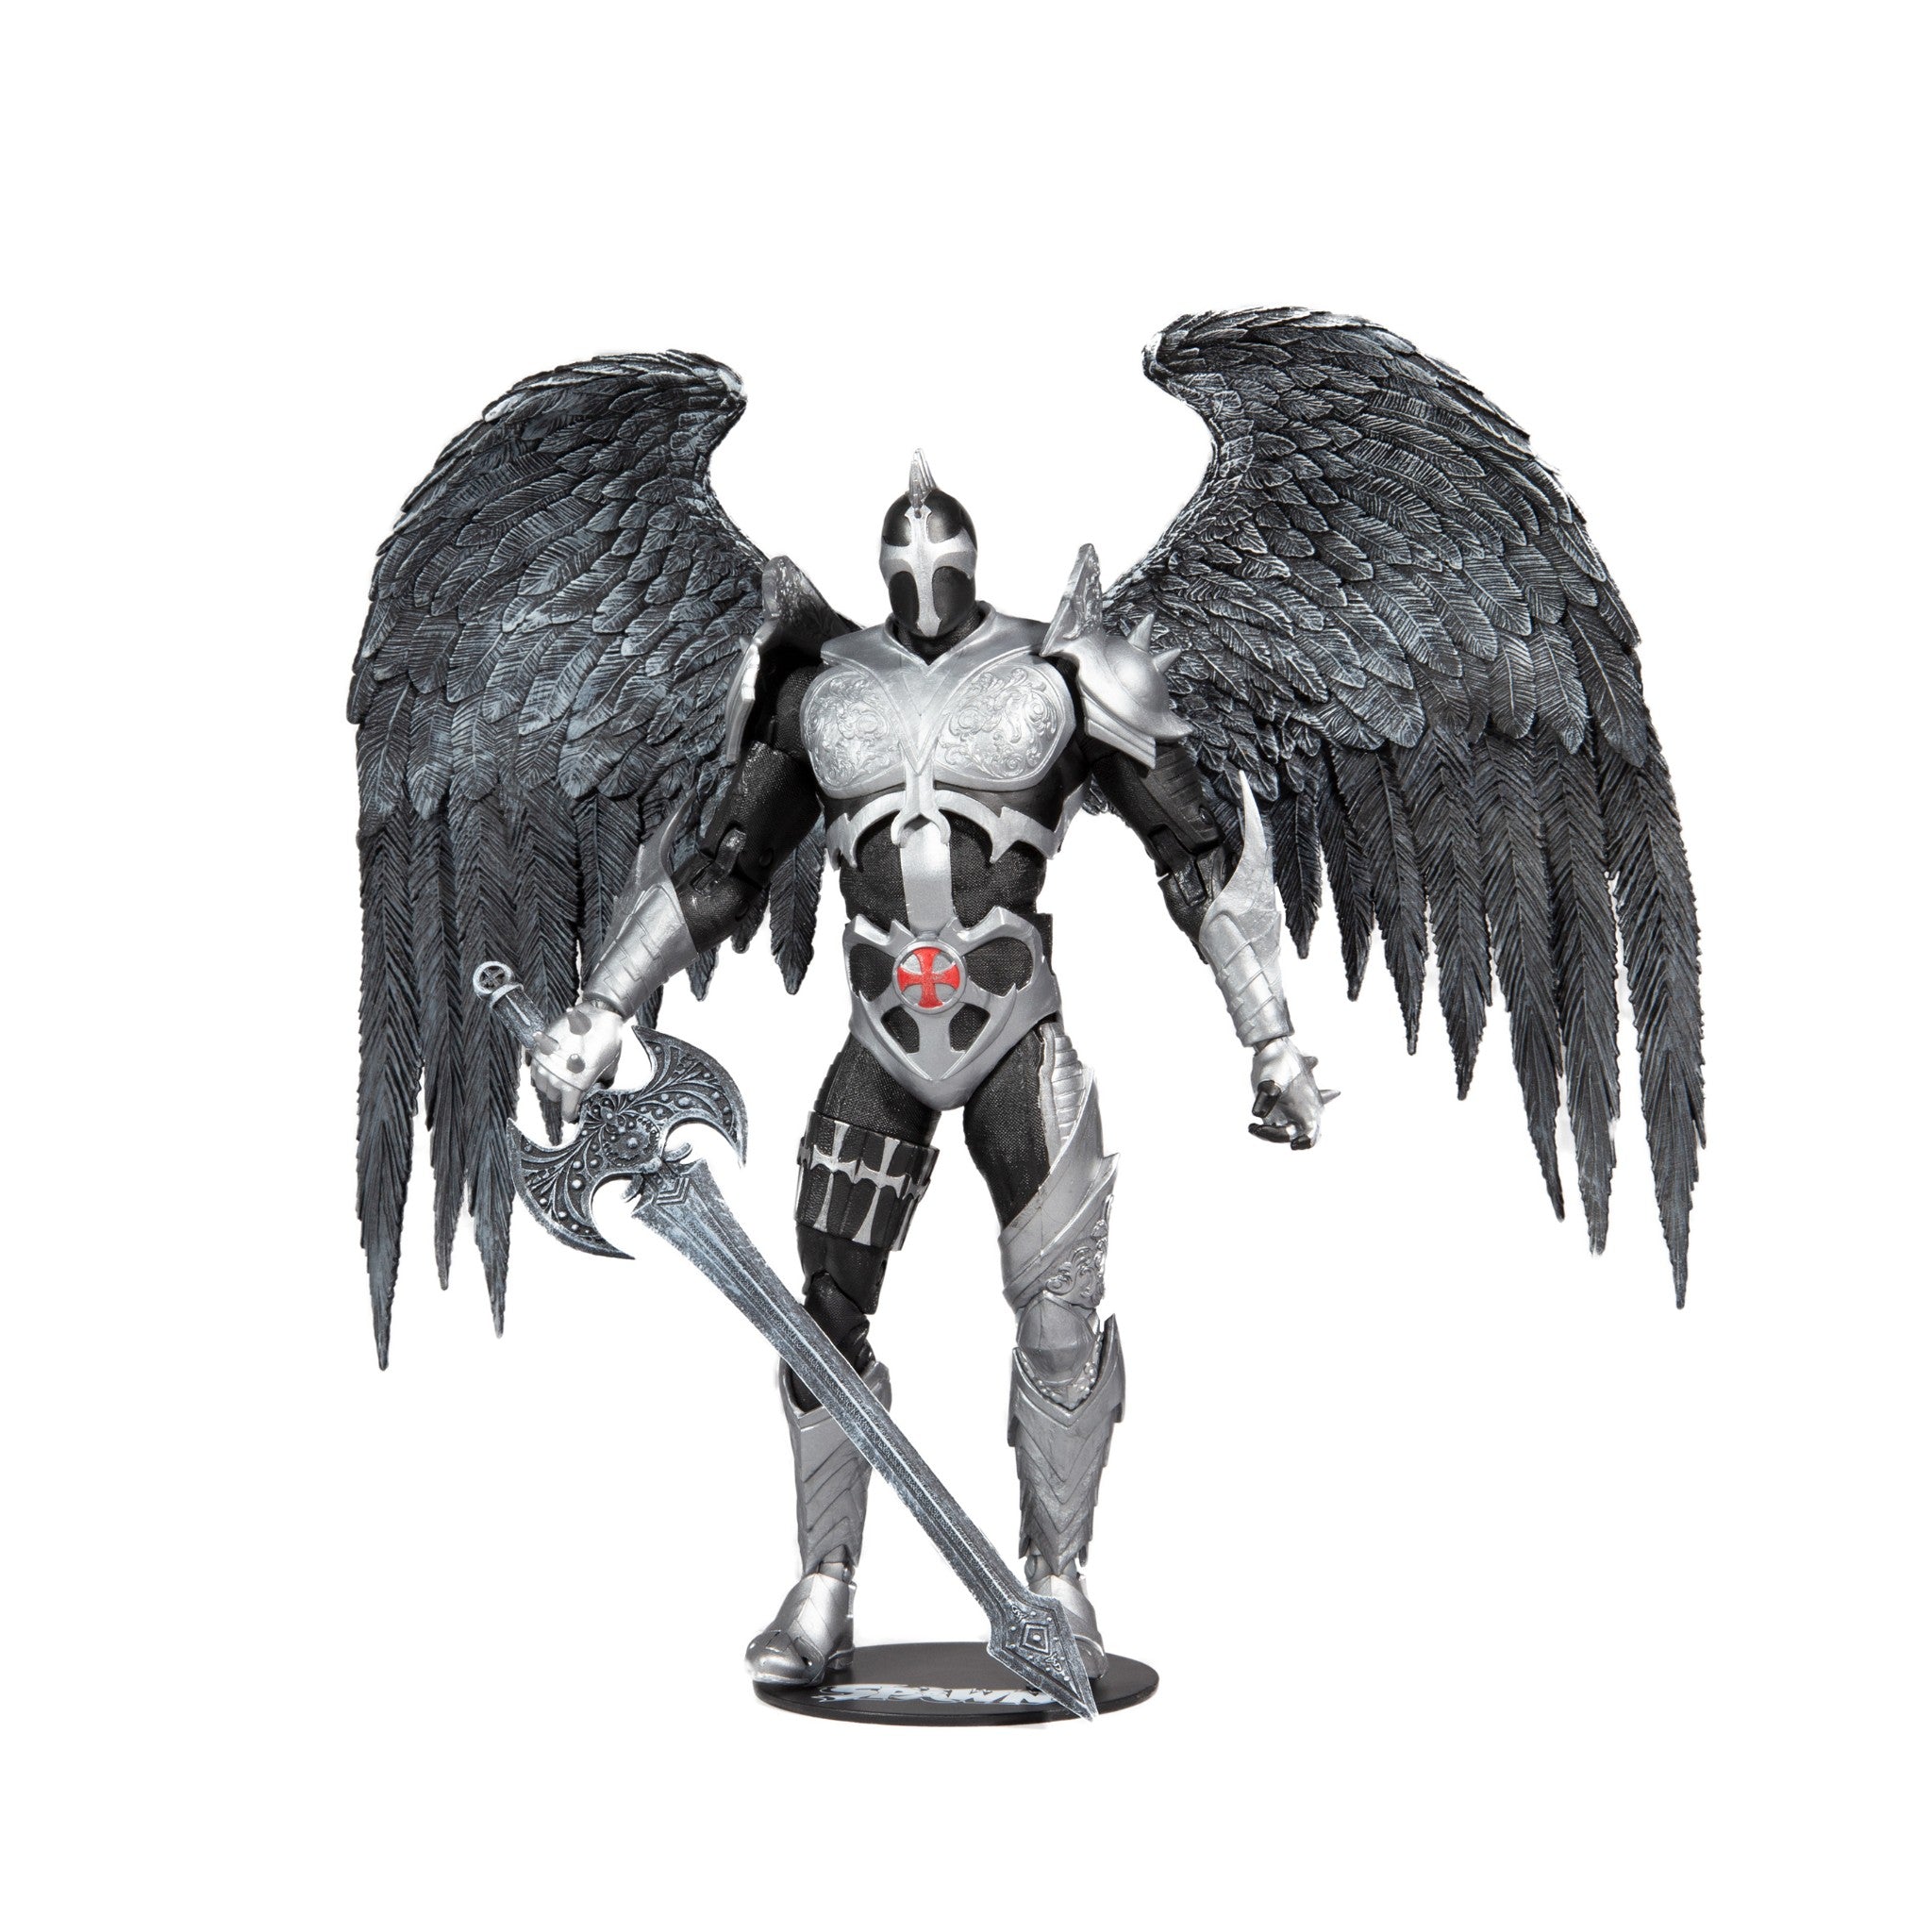 Spawn The Dark Redeemer 7" Action Figure - McFarlane Toys-3